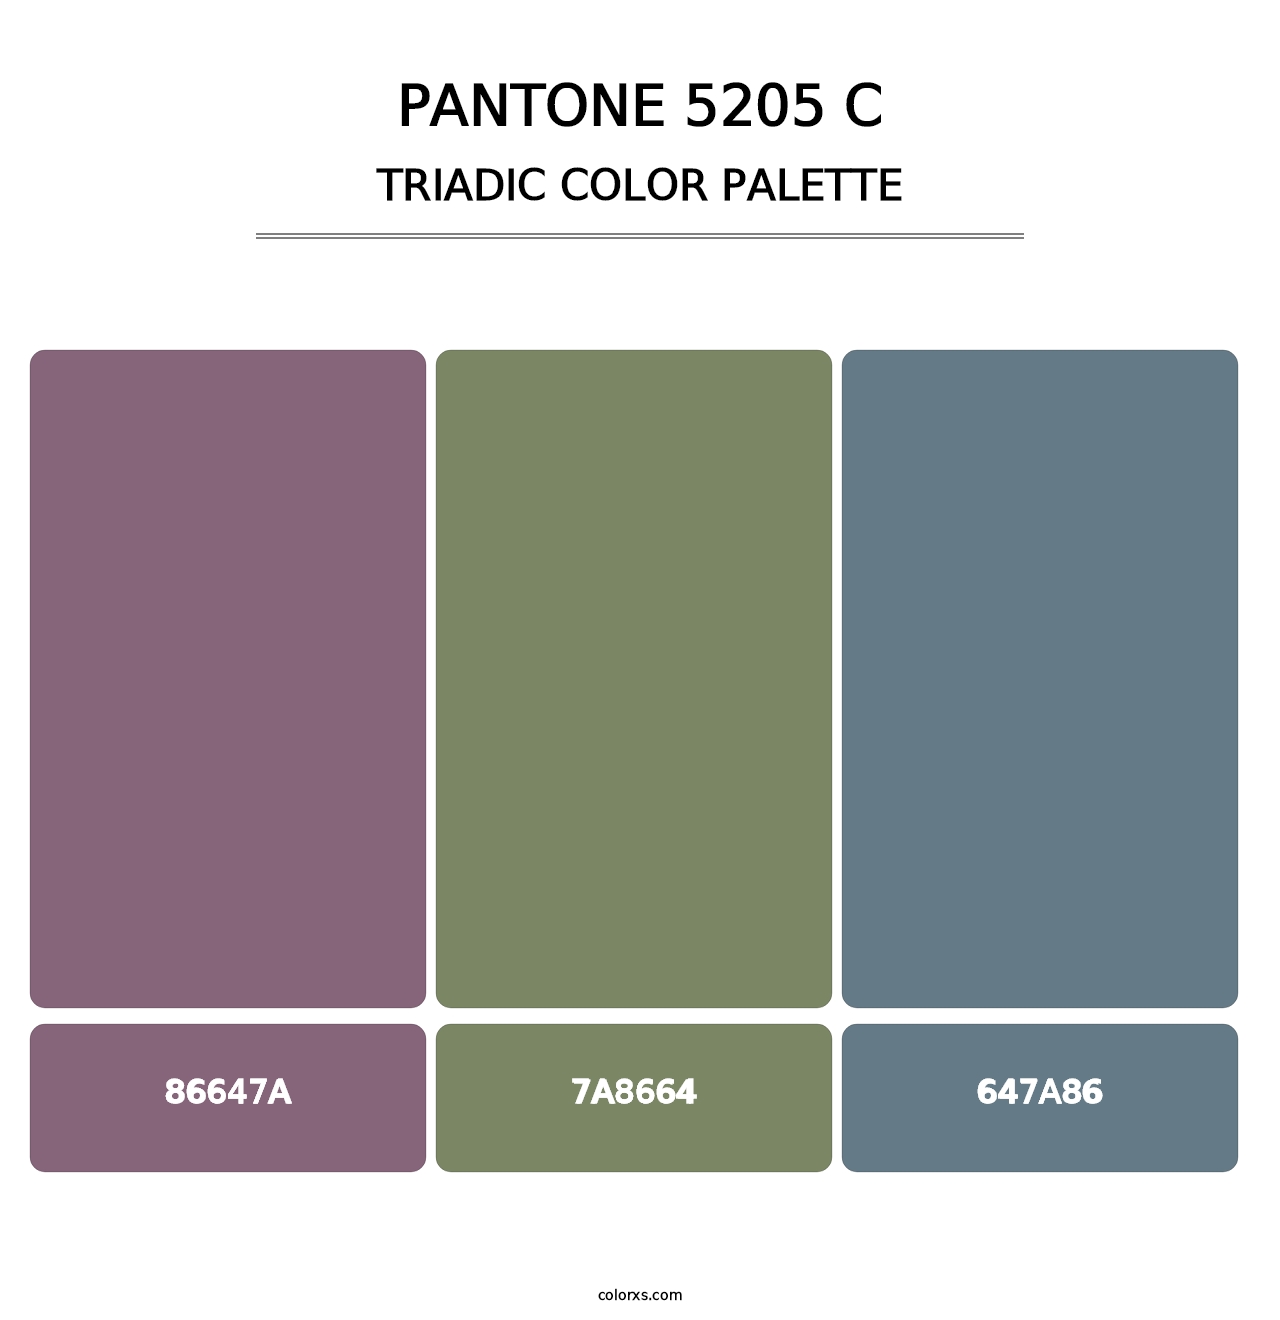 PANTONE 5205 C - Triadic Color Palette